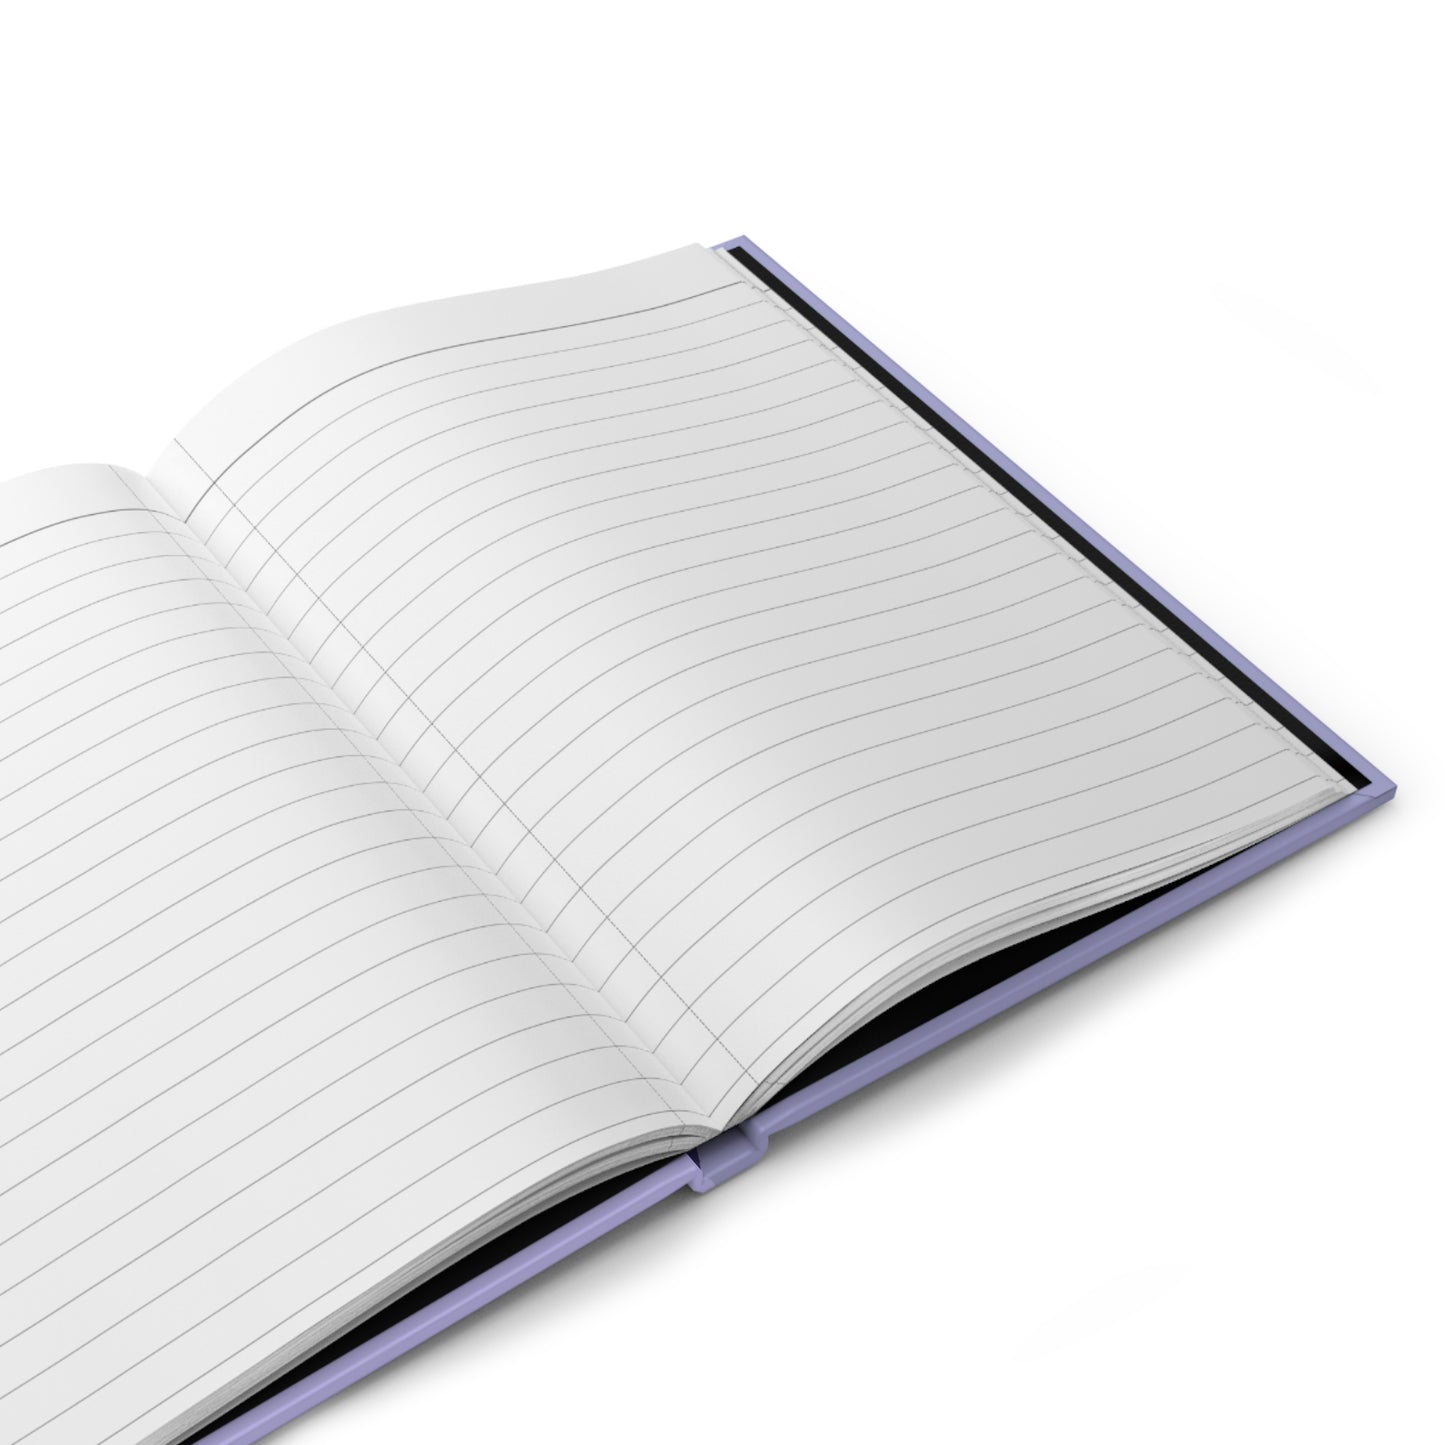 HelloToons: Bluish Billie Notebook